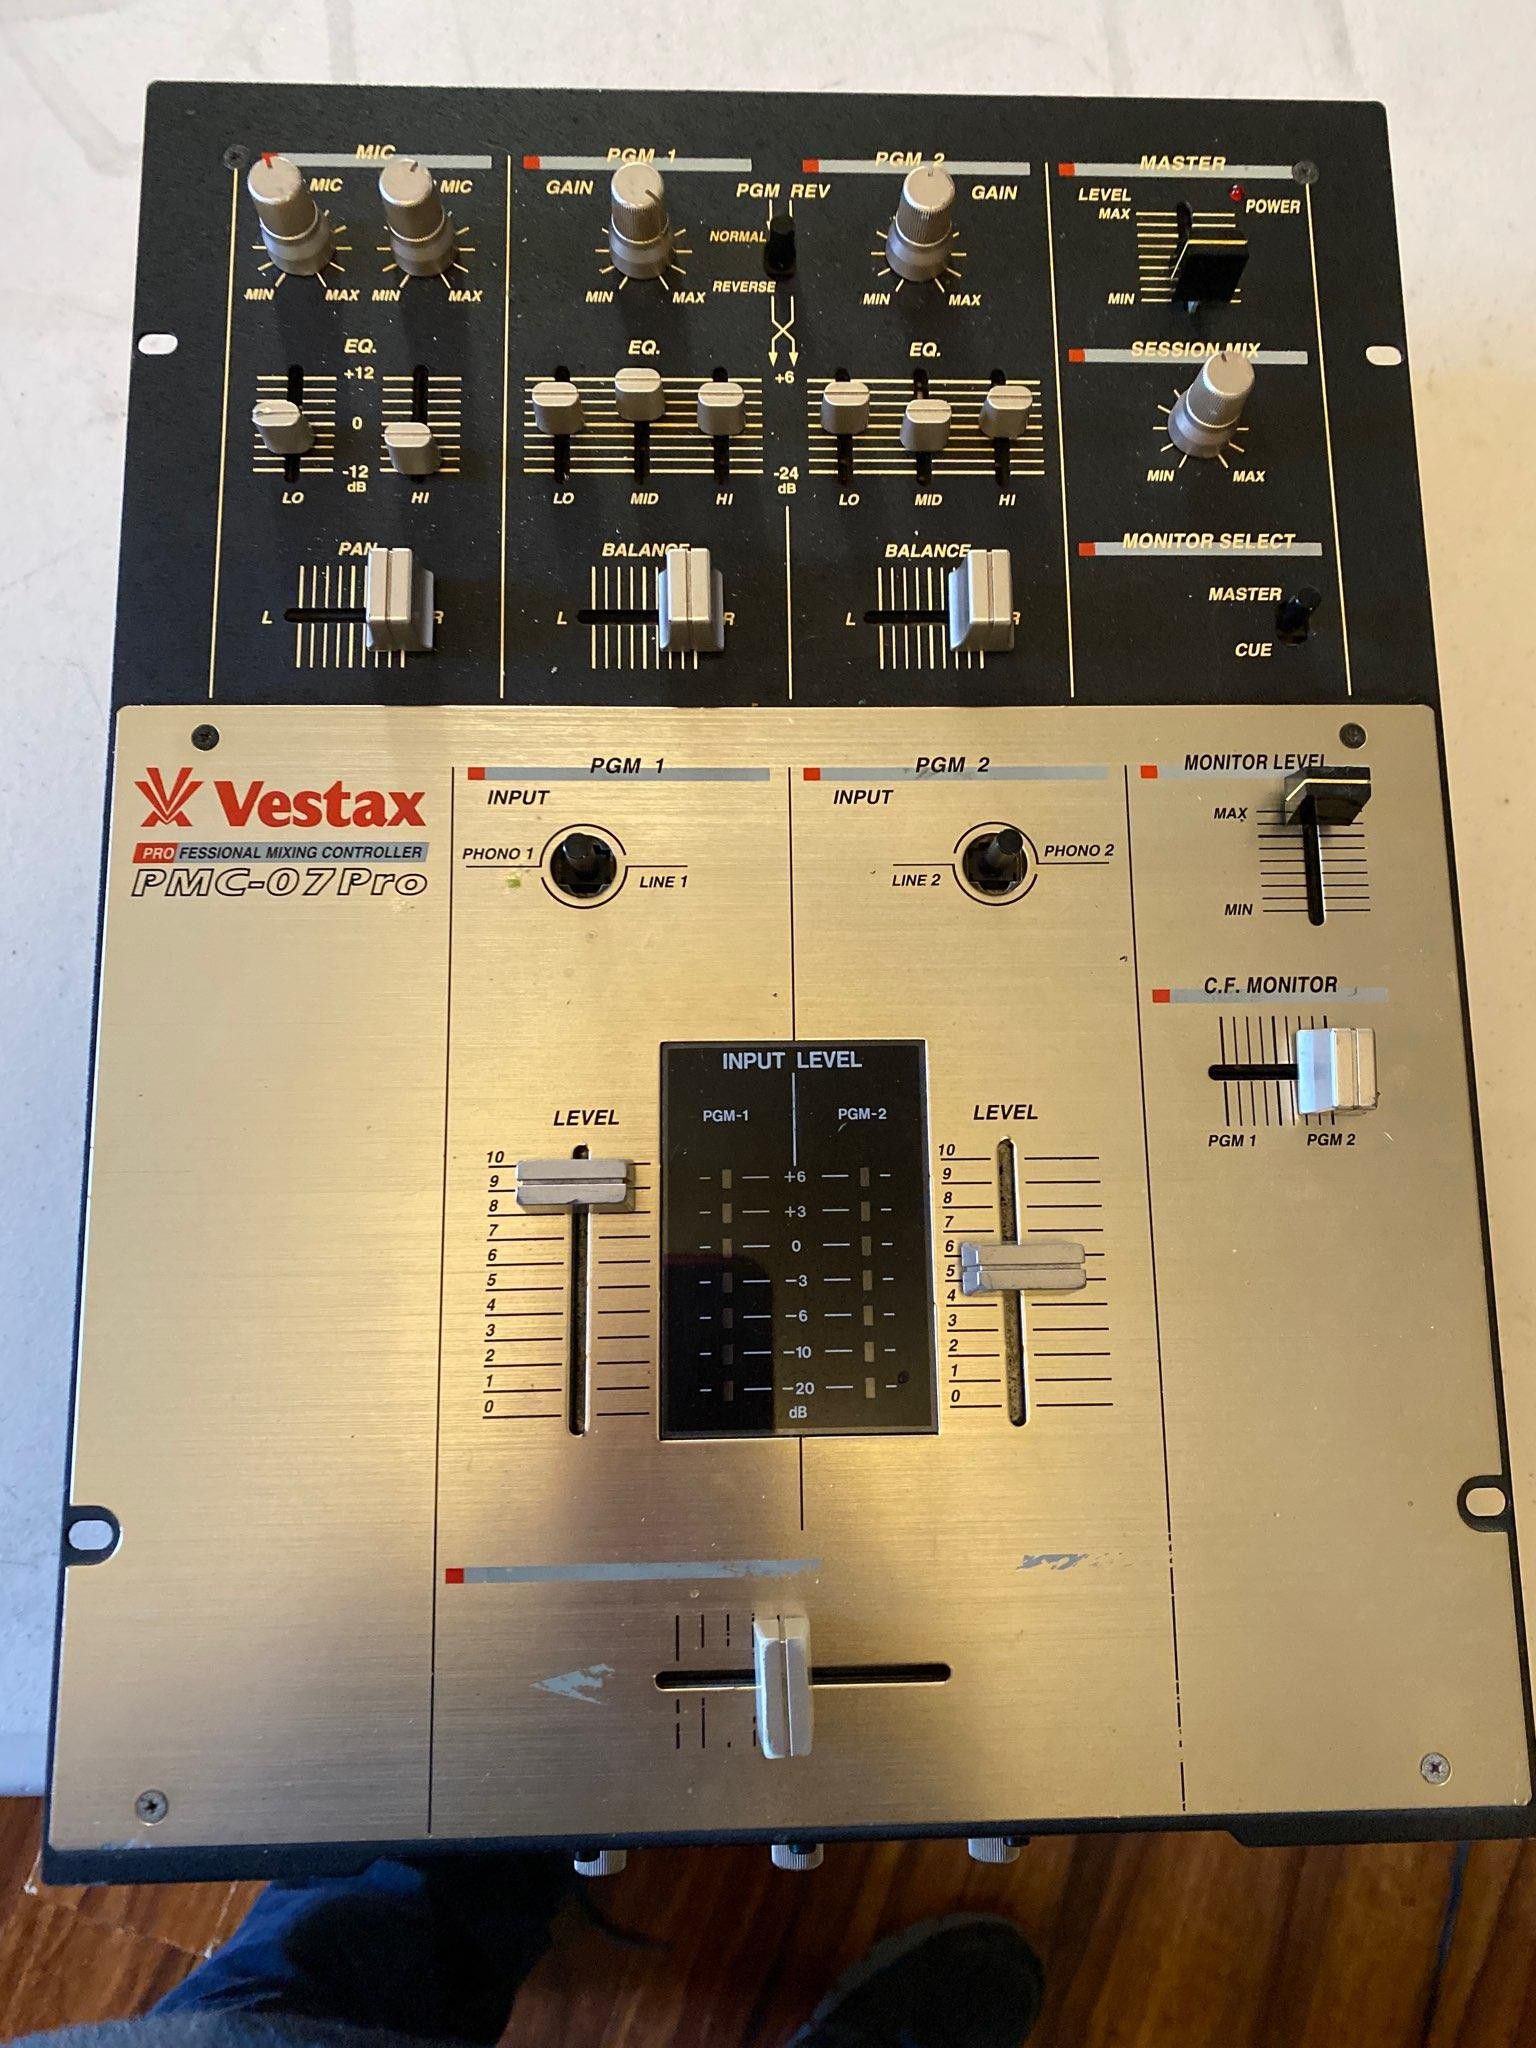 Vestax PMC-07 Pro audio mixer